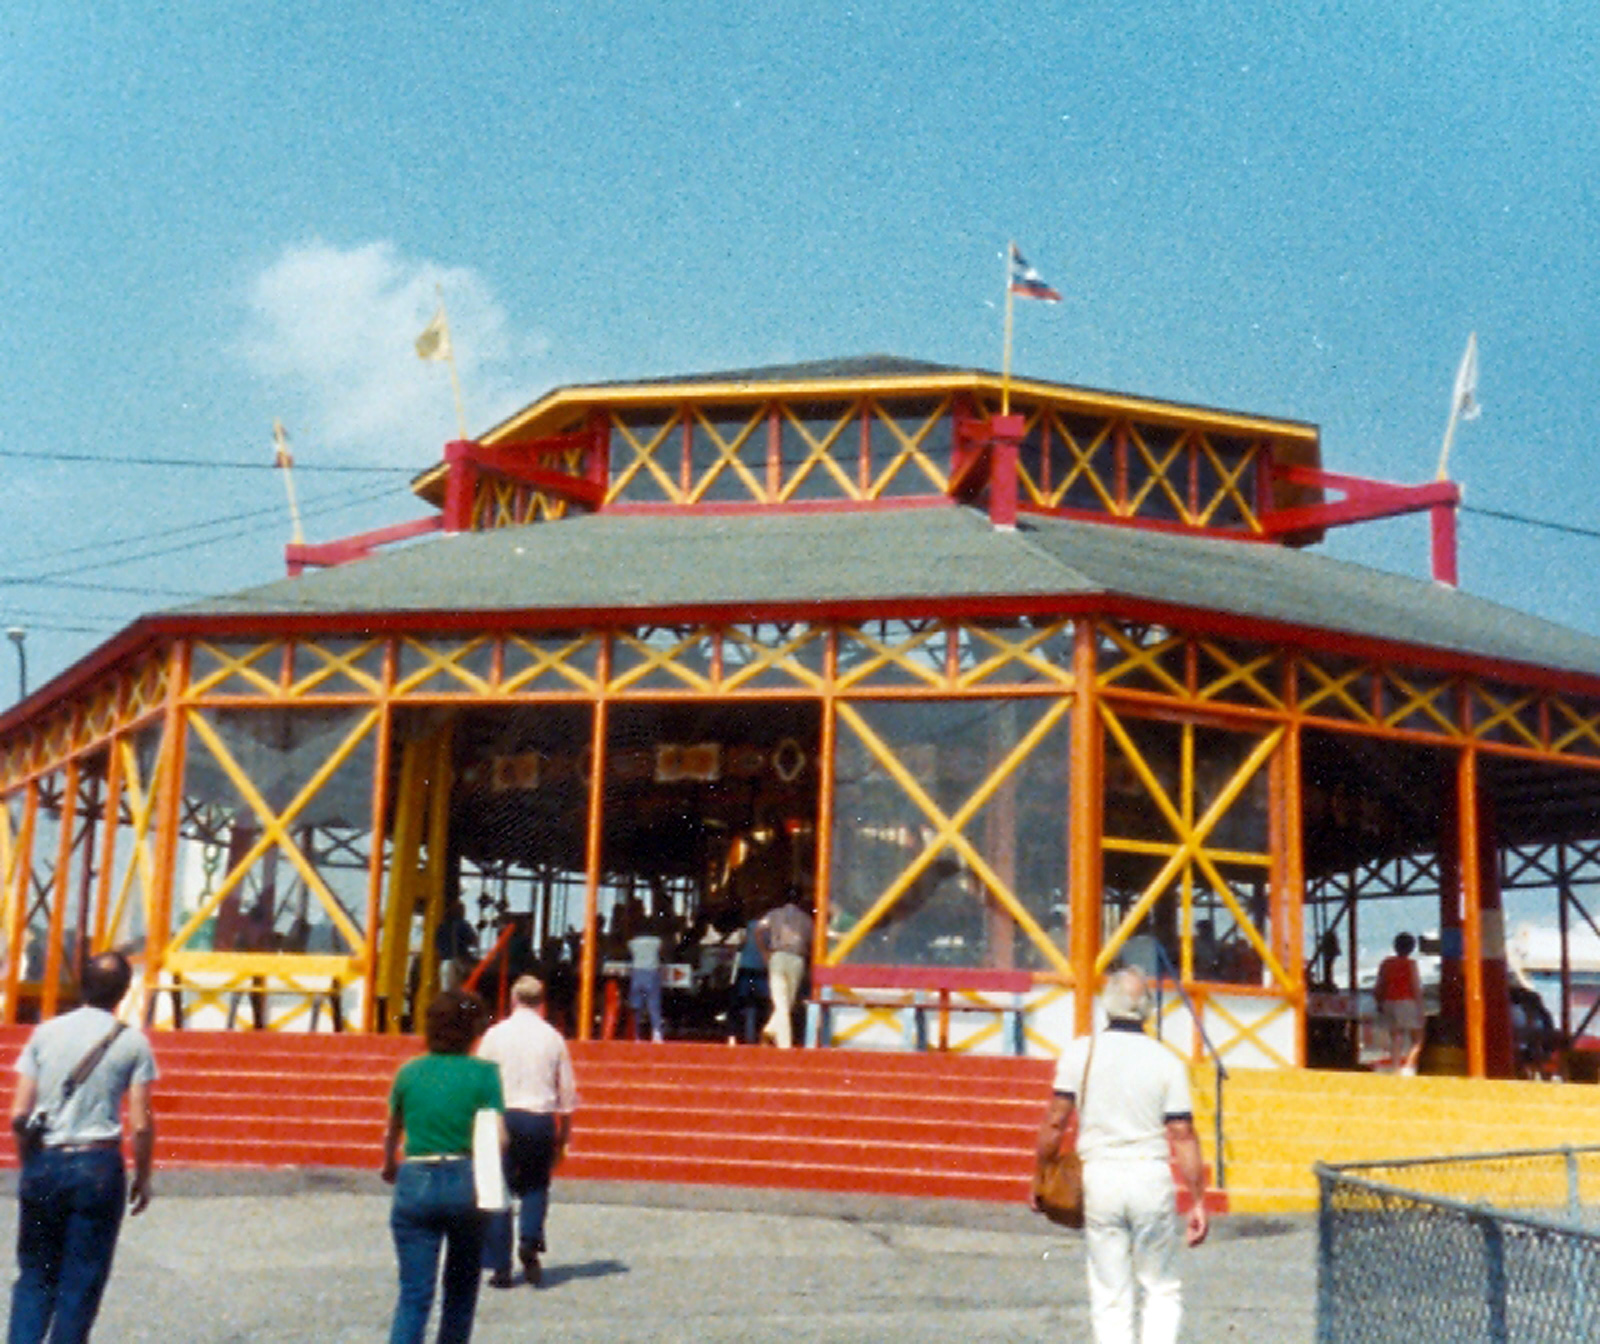 Rocky-Point-RI-ca-1910-Herschell-Spillman-carousel-building